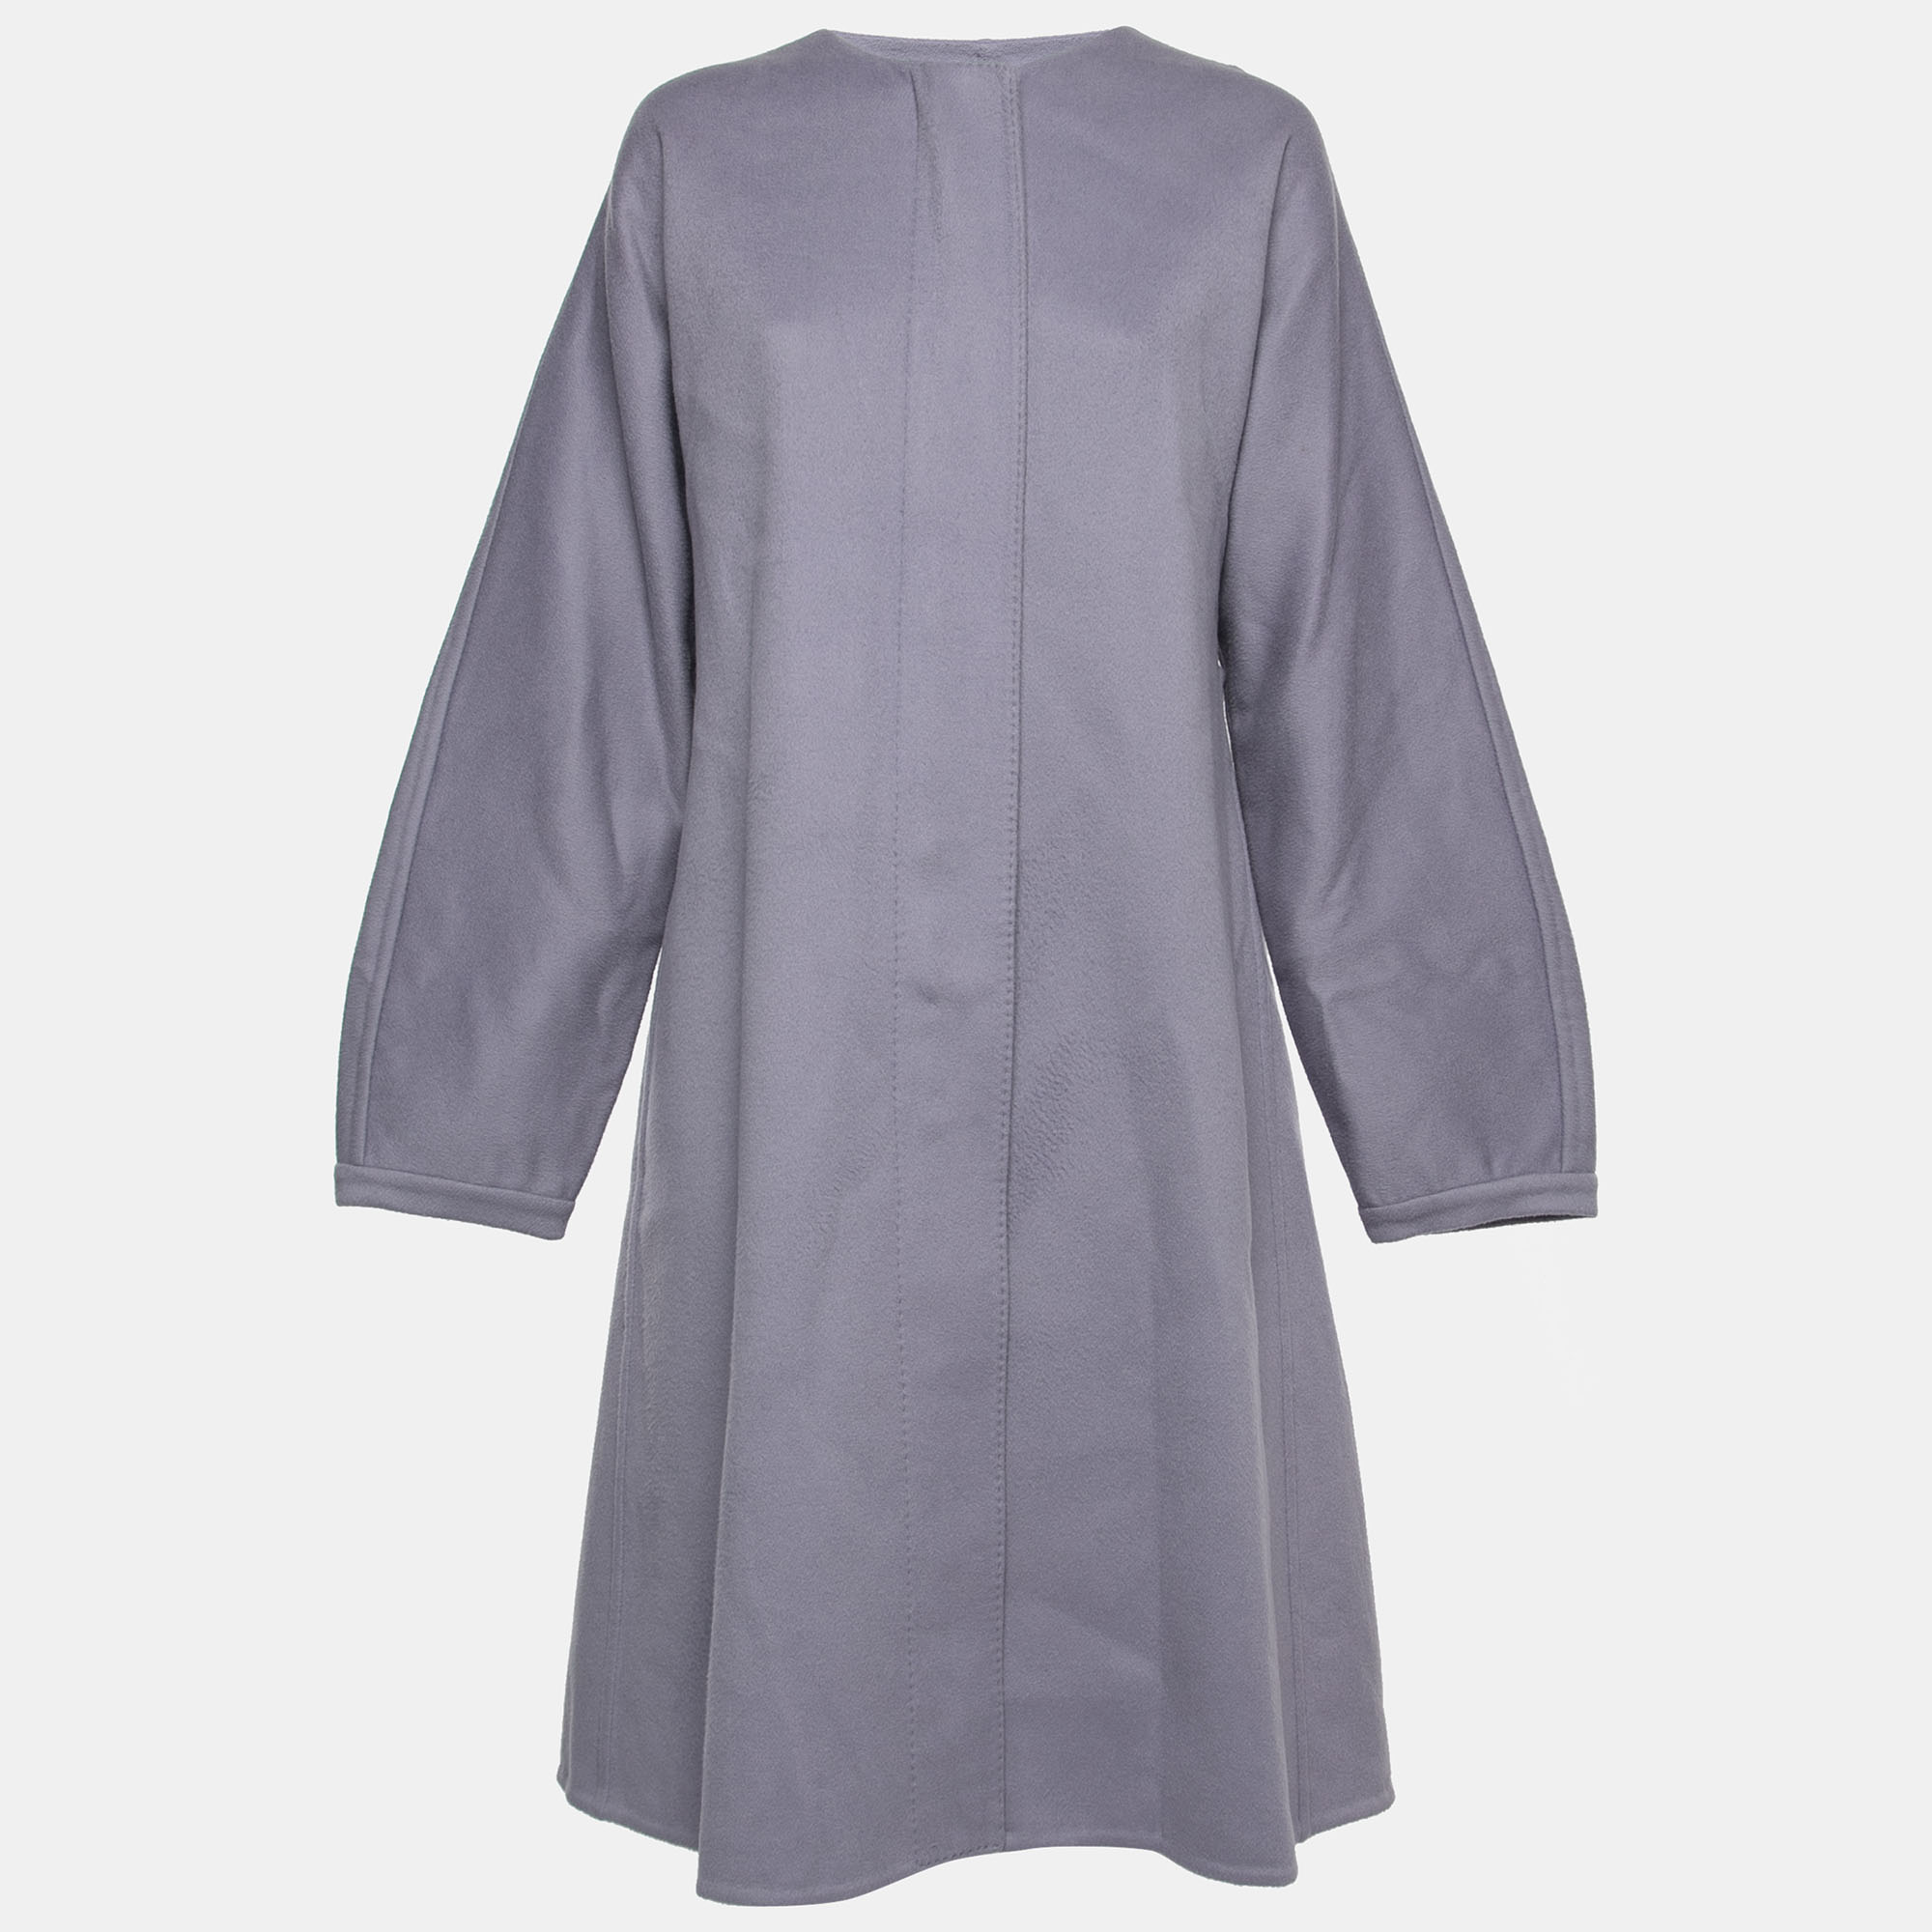 Gianfranco ferre light purple wool pleat detail coat xl